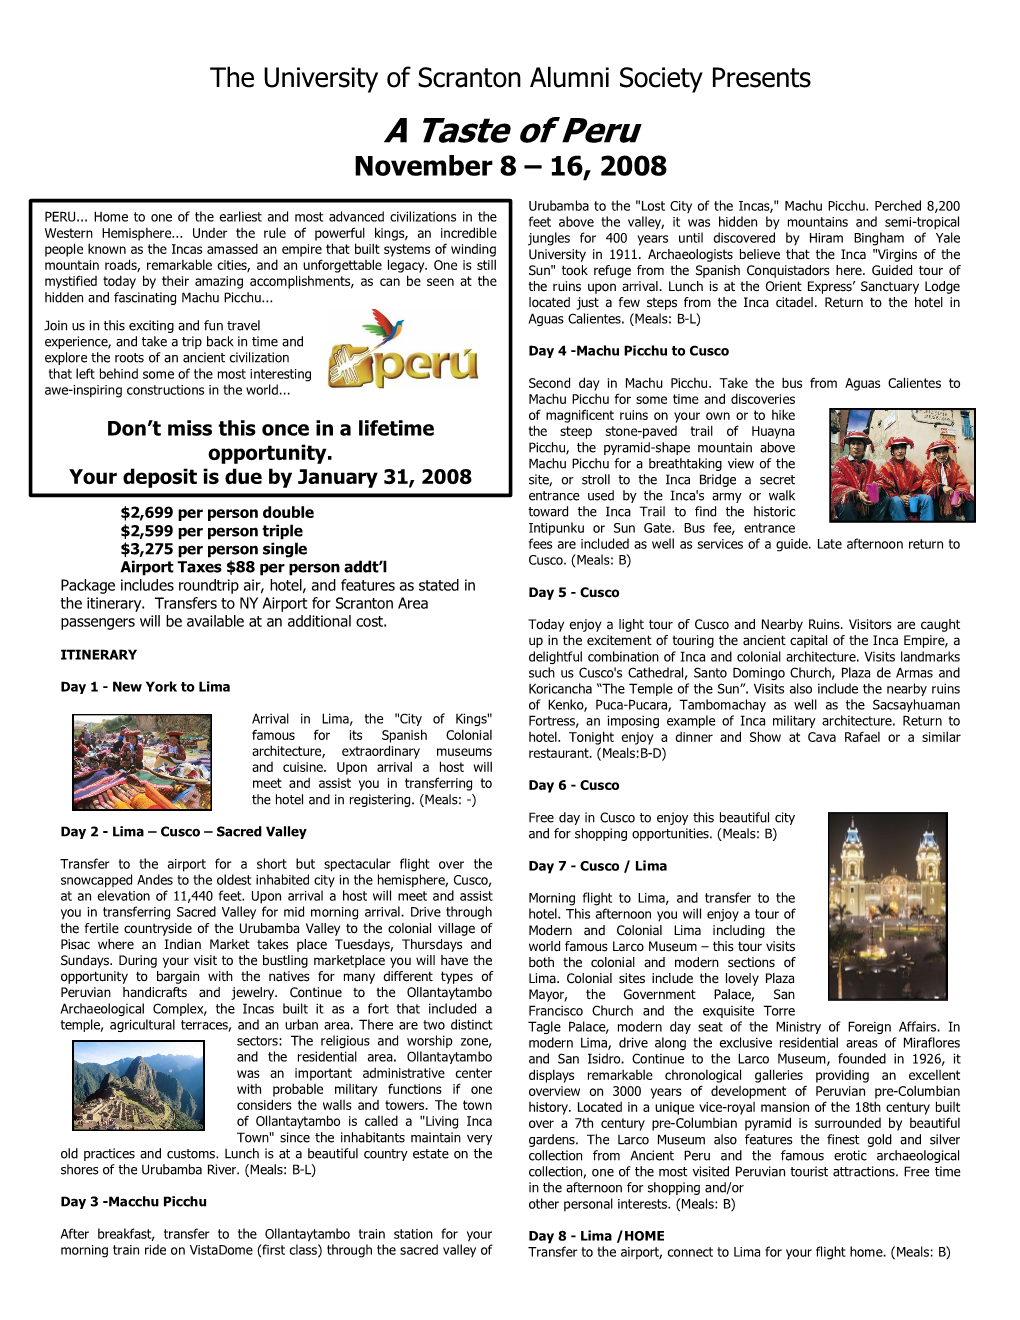 A Taste of Peru November 8 – 16, 2008